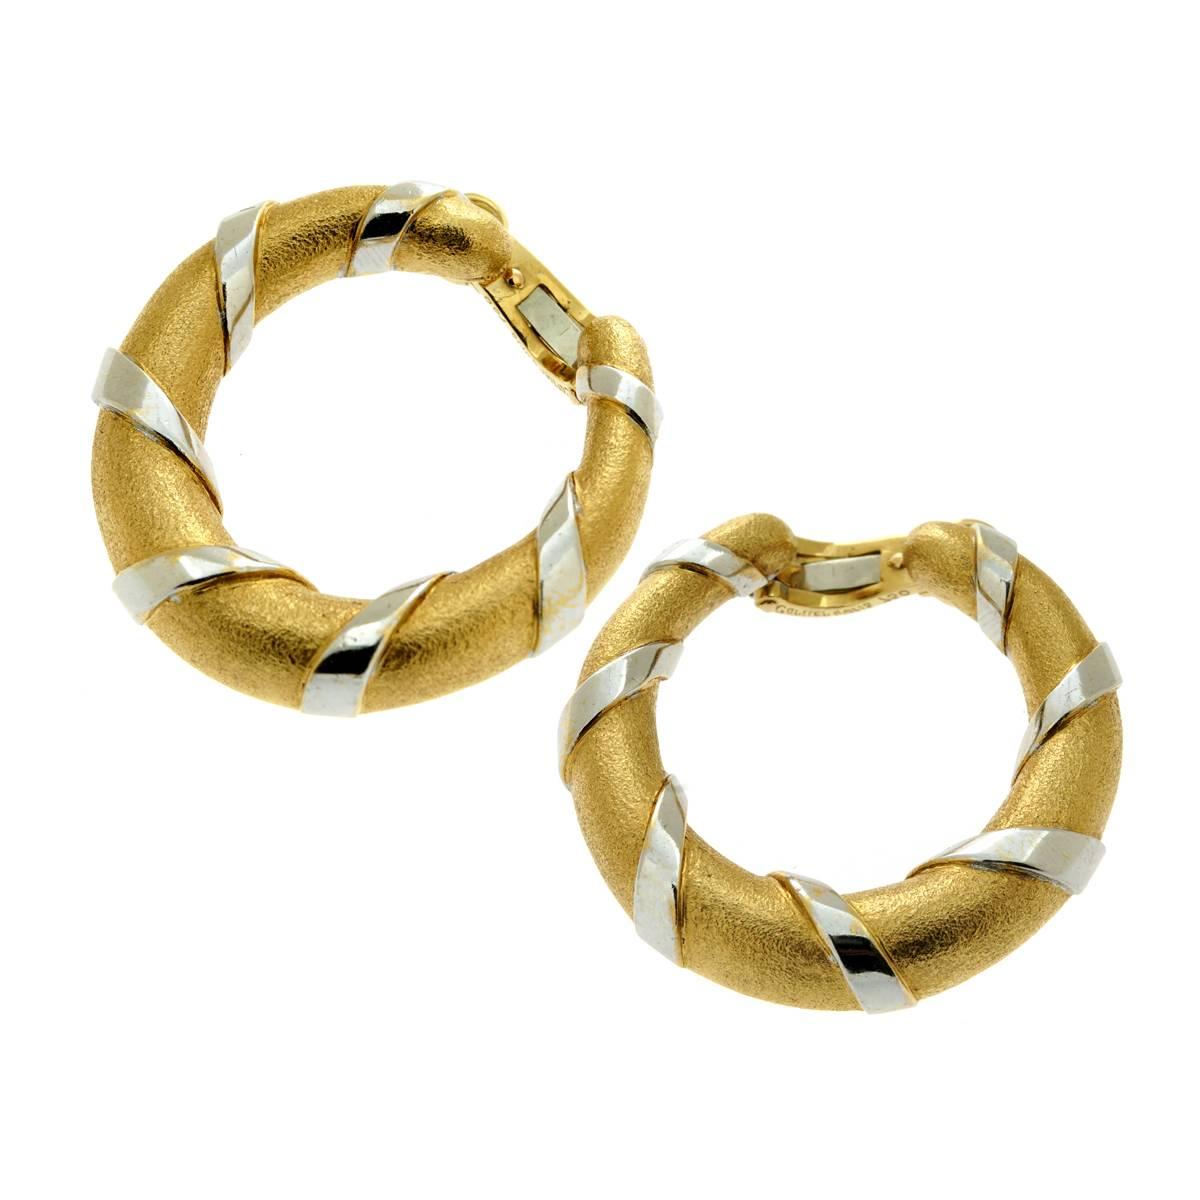 Ein fabelhaftes Paar Cartier-Ohrringe mit einem einzigartigen strukturierten Finish auf dem Gelbgold, gefolgt von glatten Bändern aus 18 Karat Weißgold, die einen perfekten Kontrast bilden.

Die Ohrringe messen 1,22